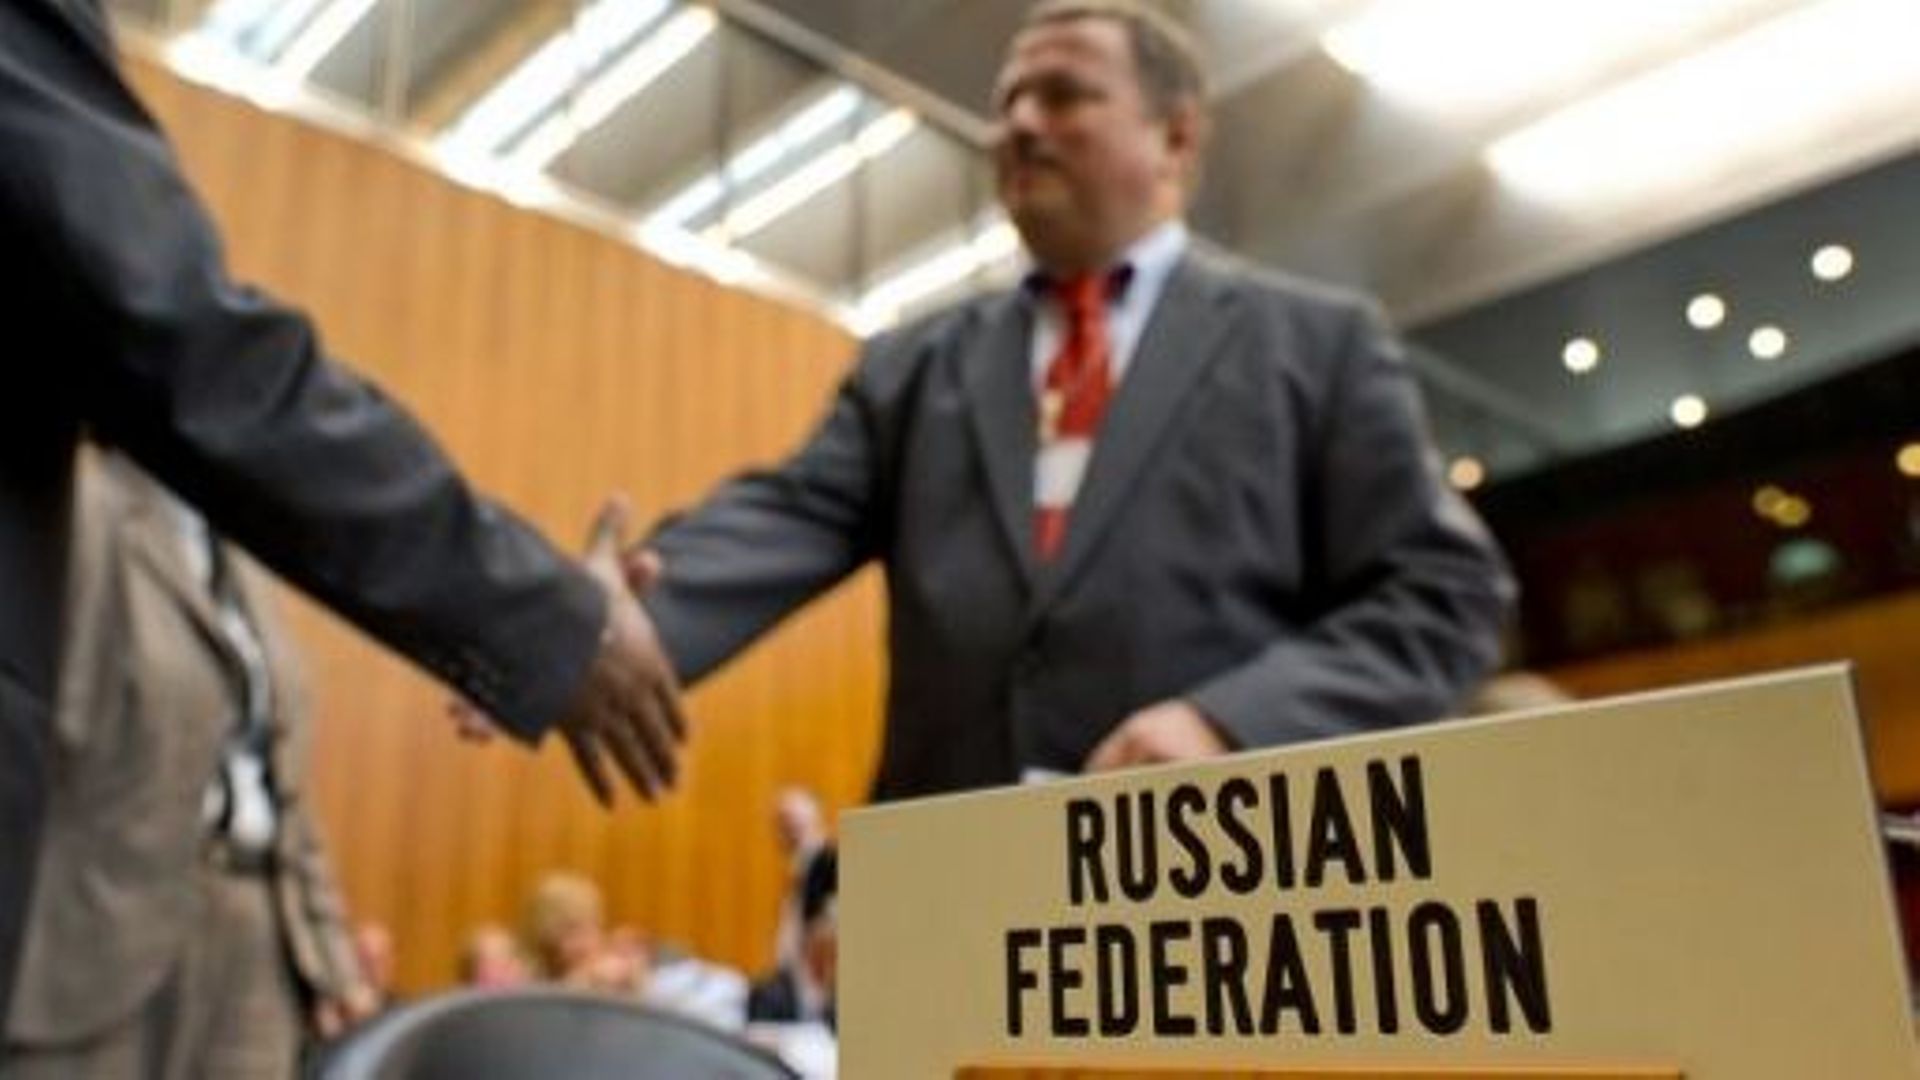 Le négociateur russe Maxim Medvedkov (d) échange une poignée de mains au siège de l'OMC à Genève lors de négociations sur l'adhésion de son pays, le 10 novembre 2011